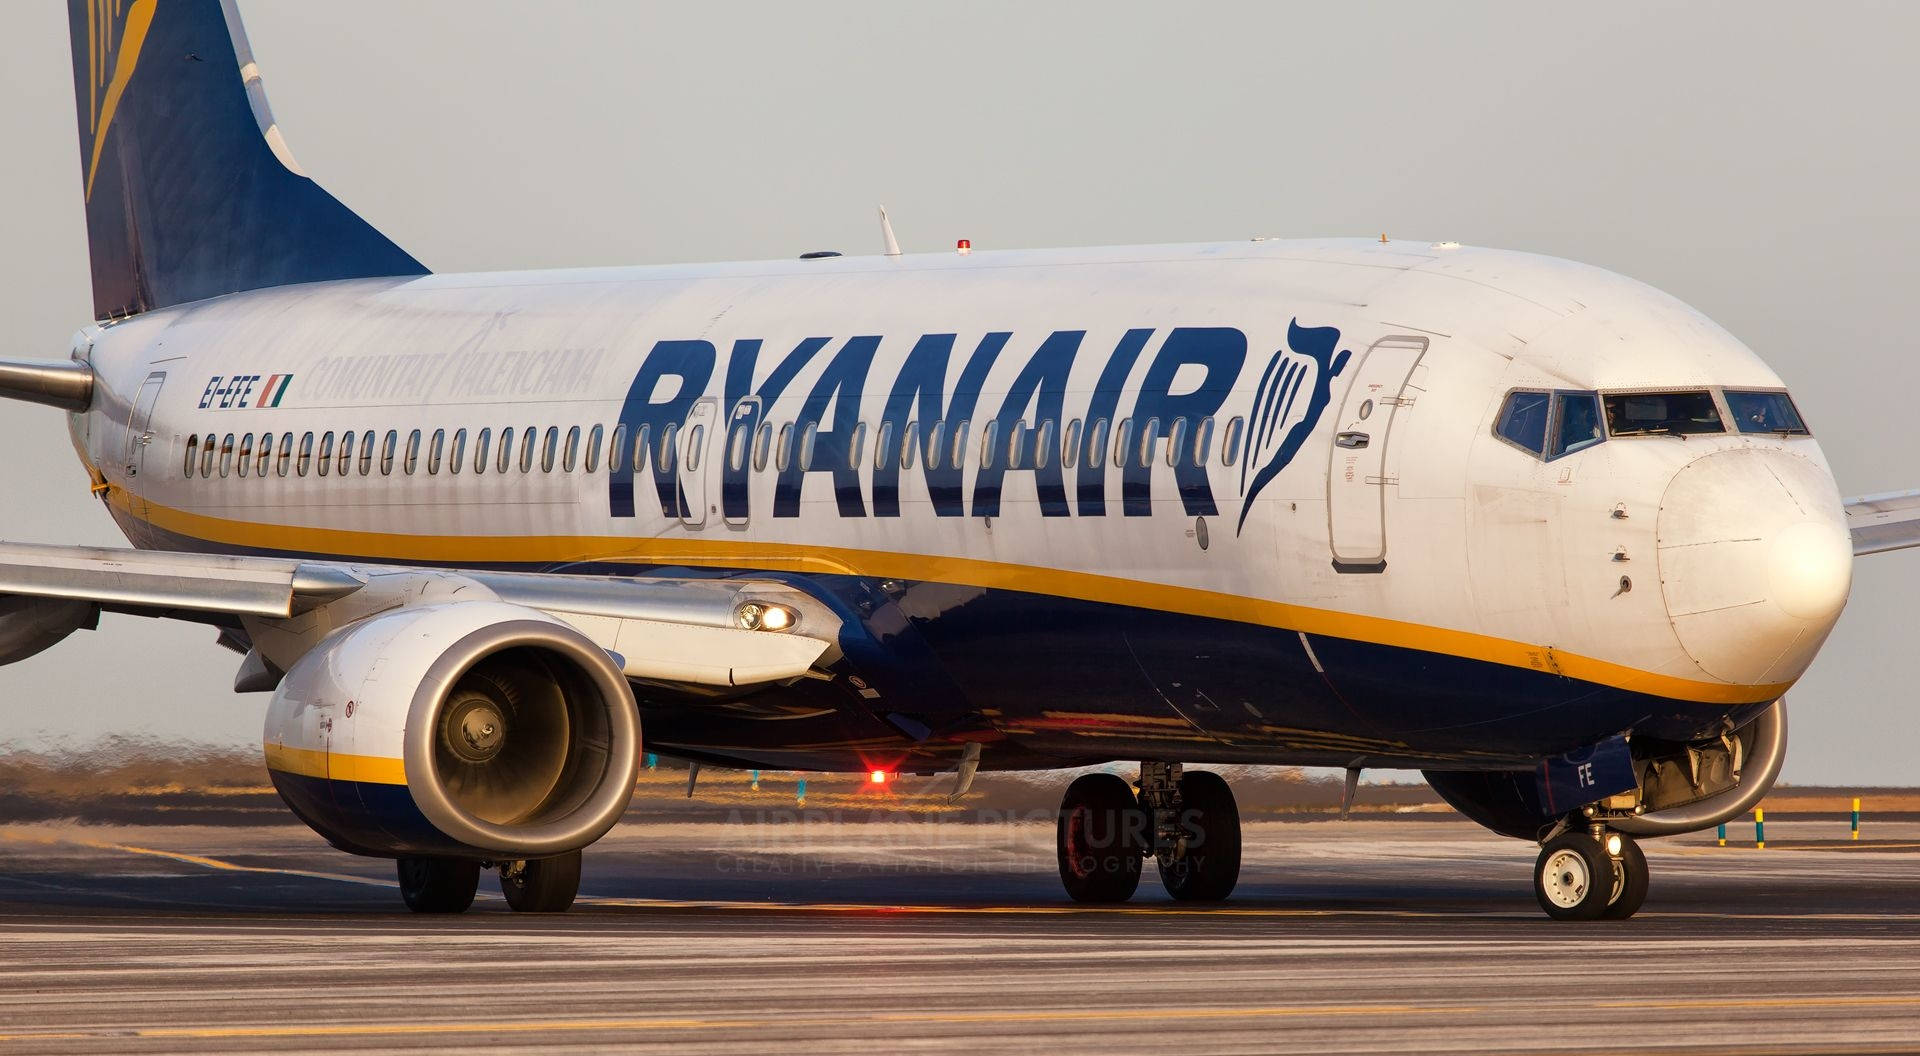 Logotipoda Ryanair No Lado Do Avião. Papel de Parede